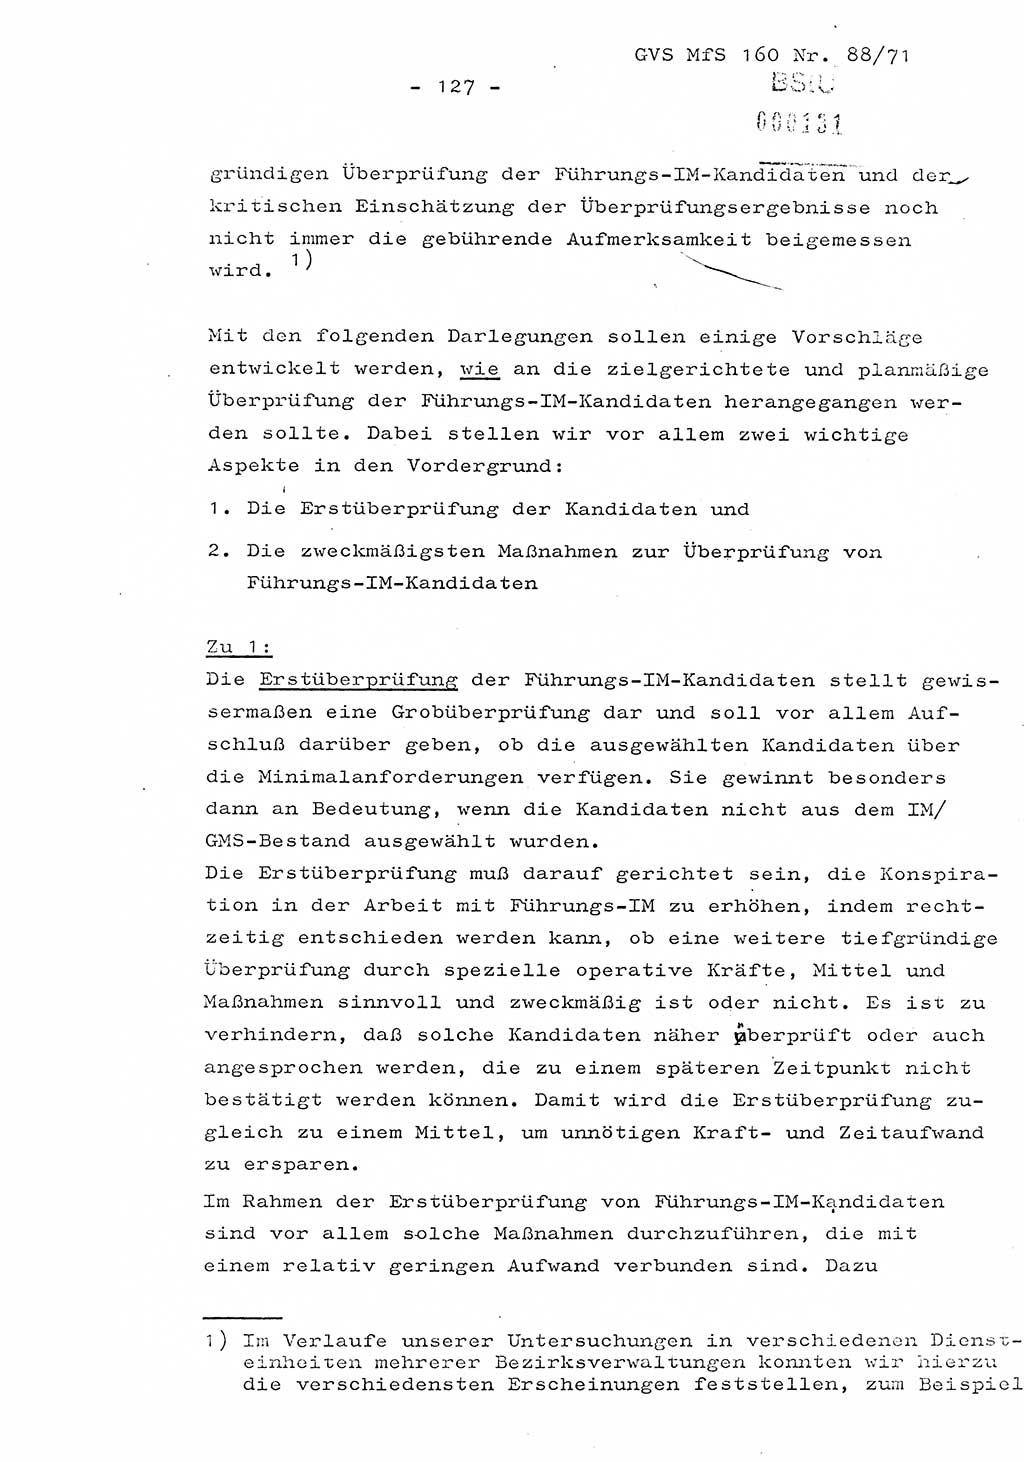 Dissertation Oberstleutnant Josef Schwarz (BV Schwerin), Major Fritz Amm (JHS), Hauptmann Peter Gräßler (JHS), Ministerium für Staatssicherheit (MfS) [Deutsche Demokratische Republik (DDR)], Juristische Hochschule (JHS), Geheime Verschlußsache (GVS) 160-88/71, Potsdam 1972, Seite 127 (Diss. MfS DDR JHS GVS 160-88/71 1972, S. 127)